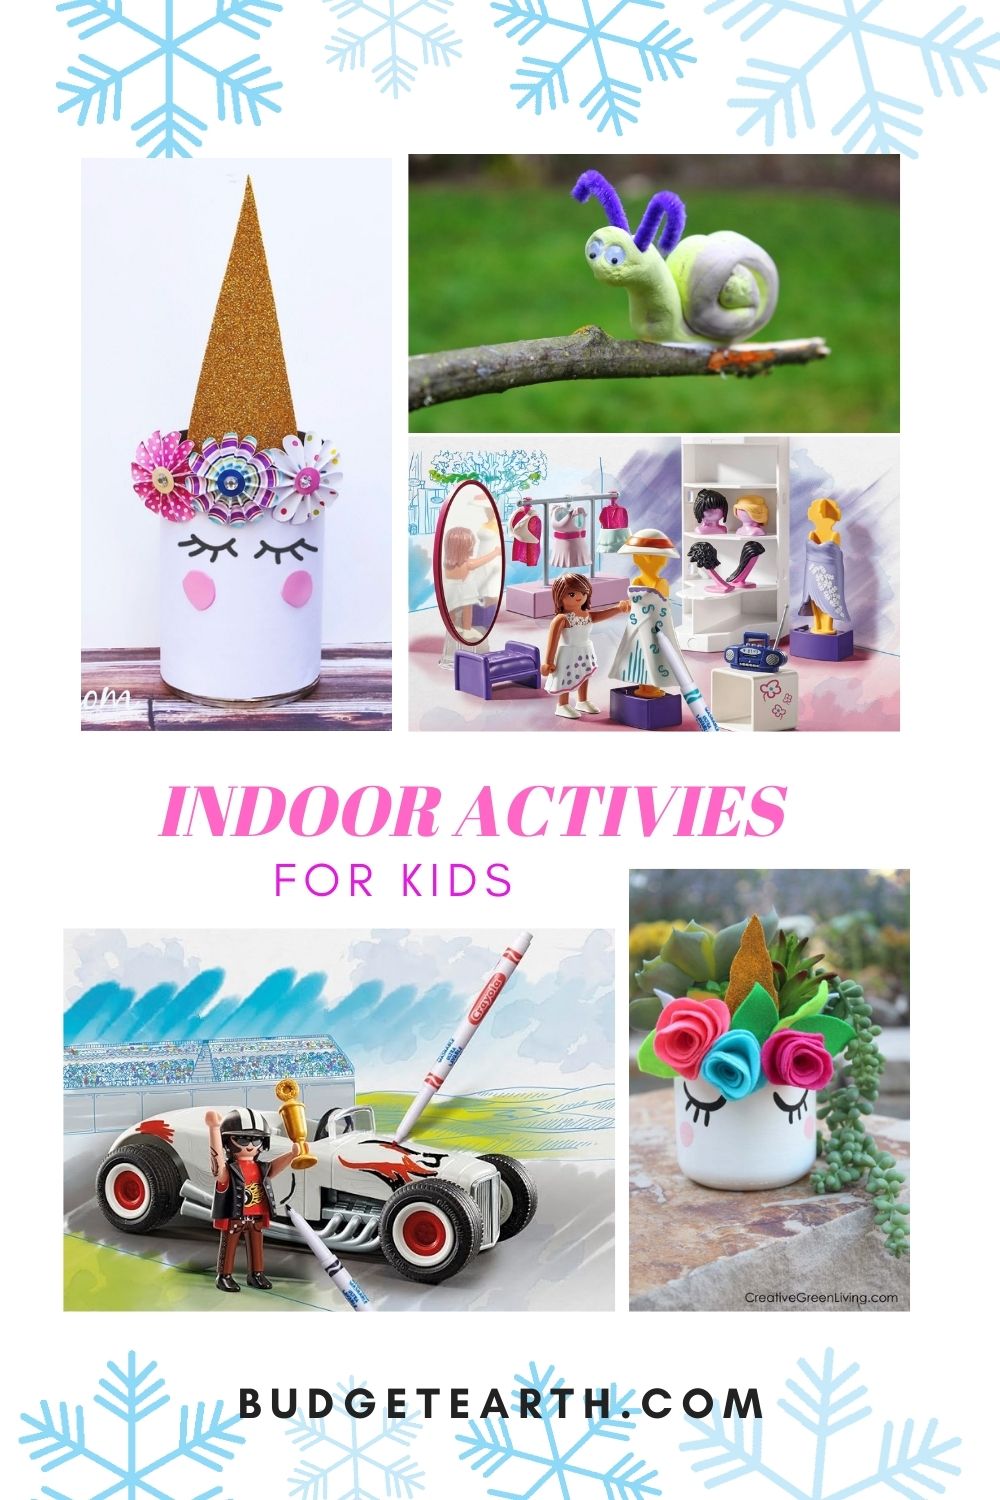 examples of winter indoor activities for kids